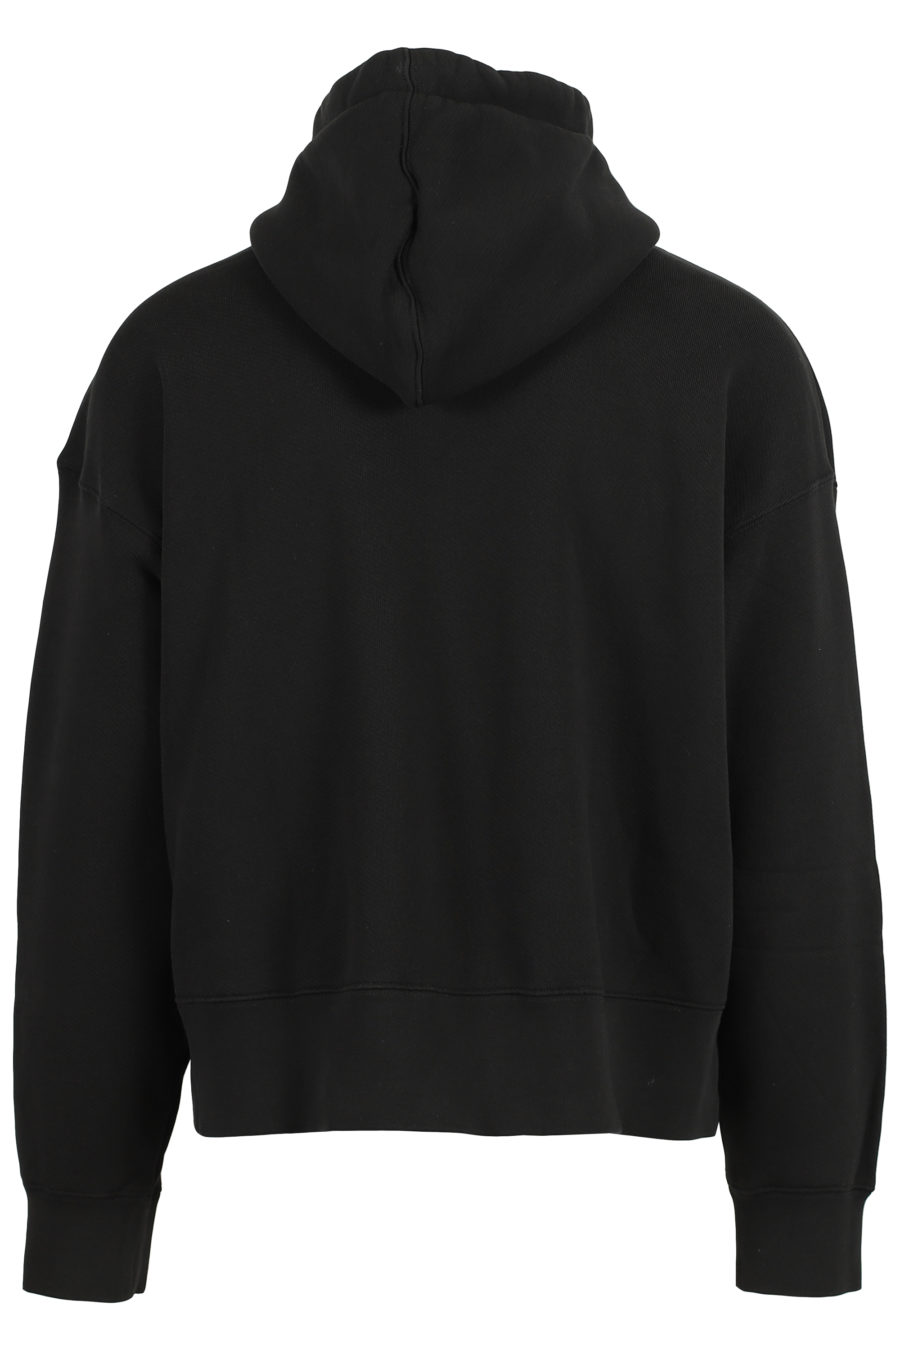 Sudadera con capucha de color negro con logo grande blanco - IMG 3633